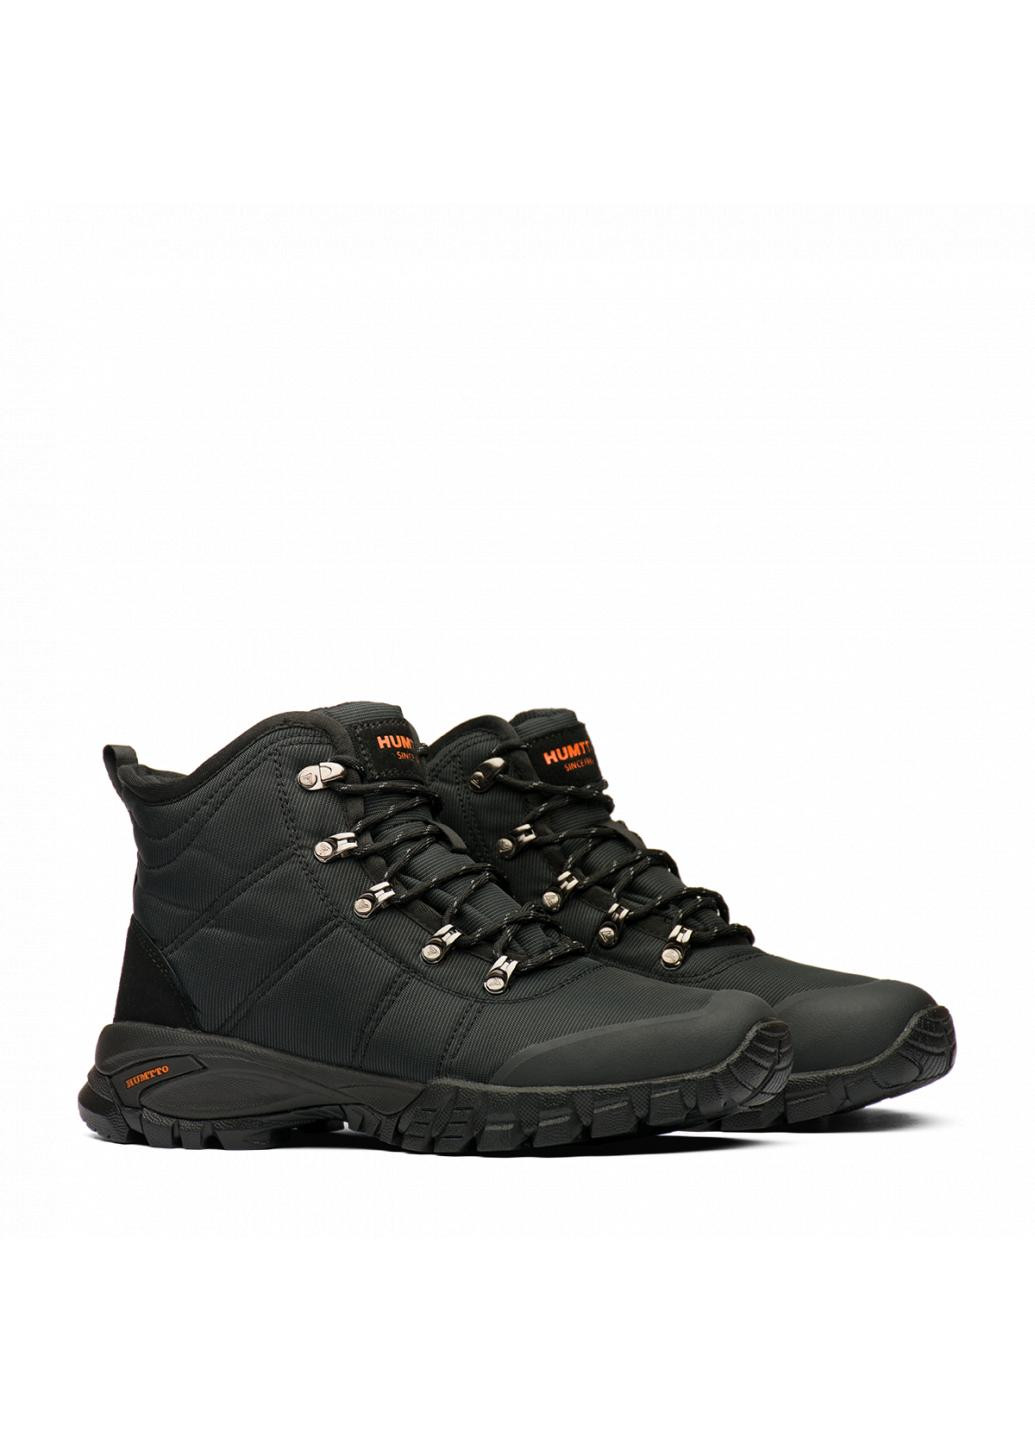 Черные зимние ботинки мужские 220281a1 Humtto